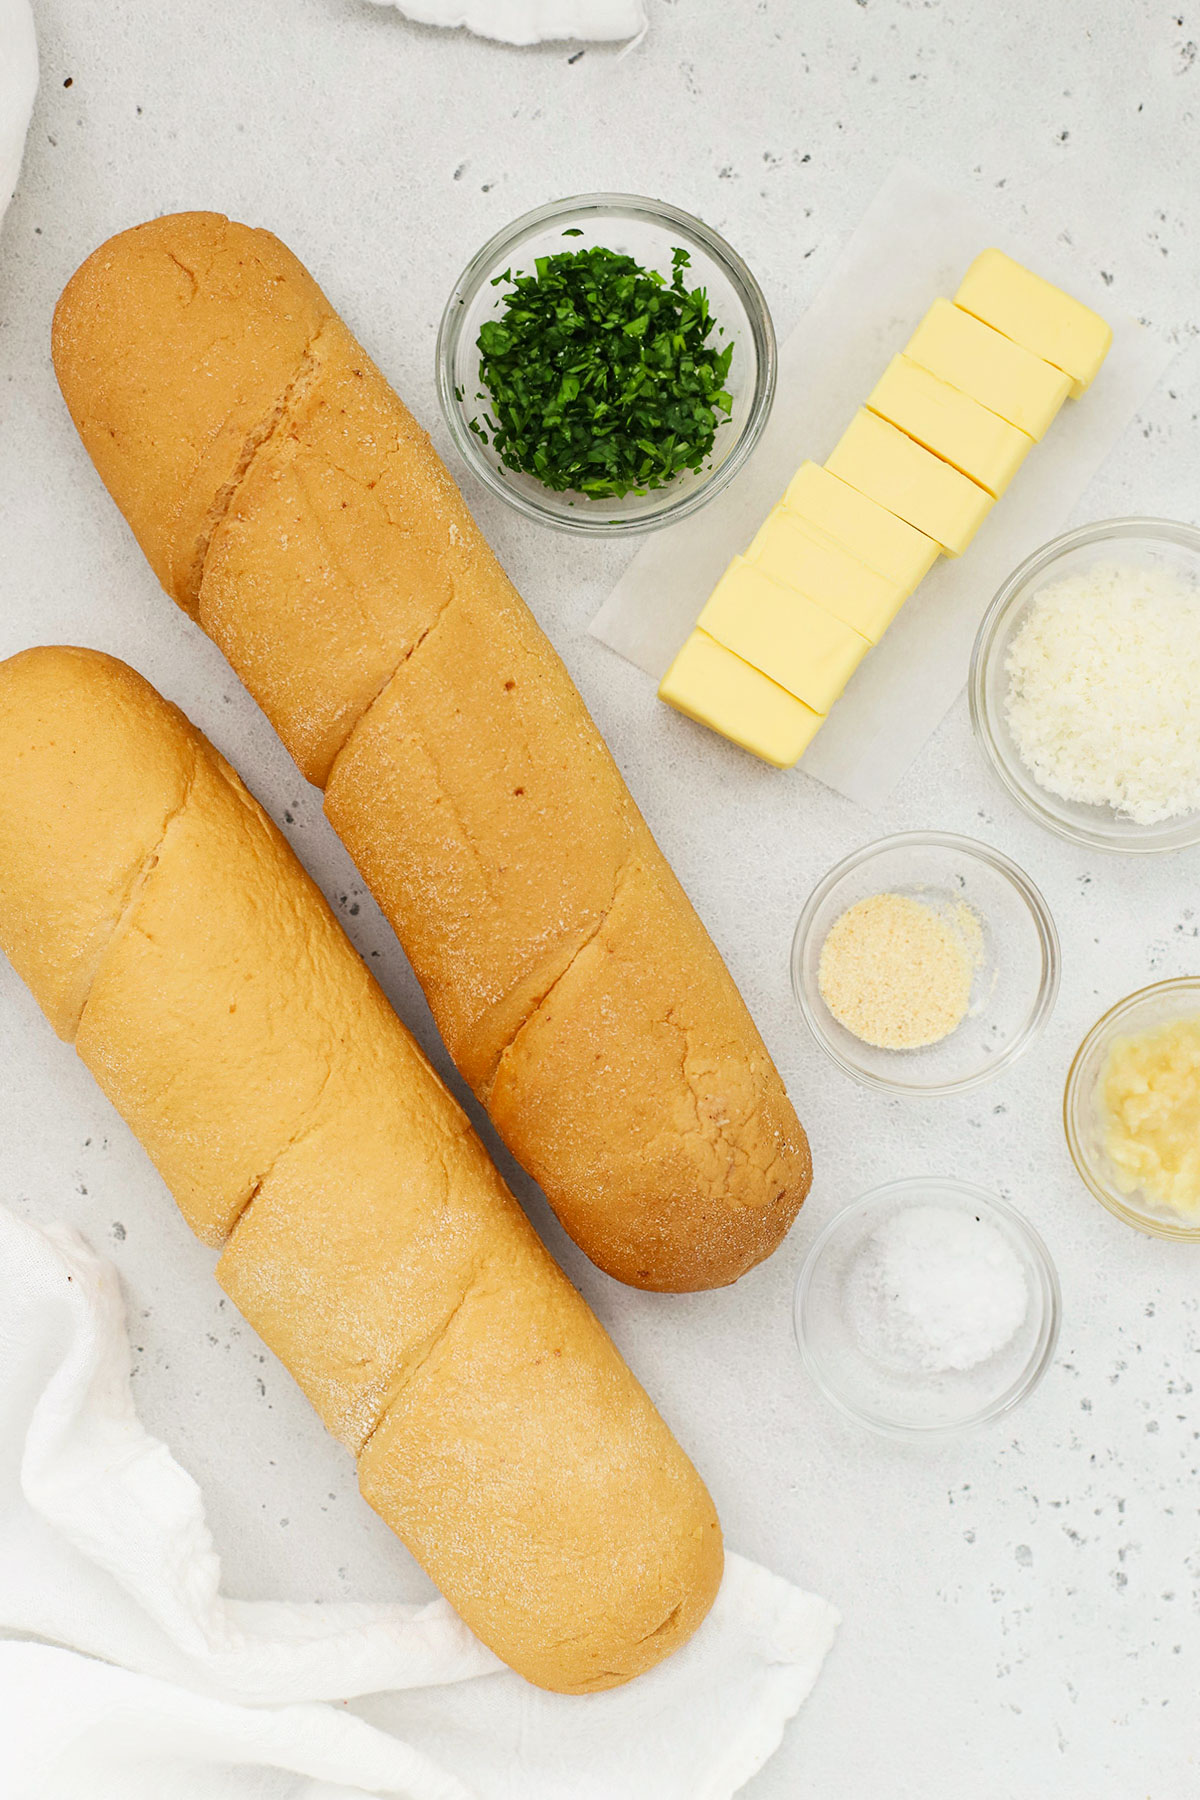 Ingredients for gluten-free garlic bread